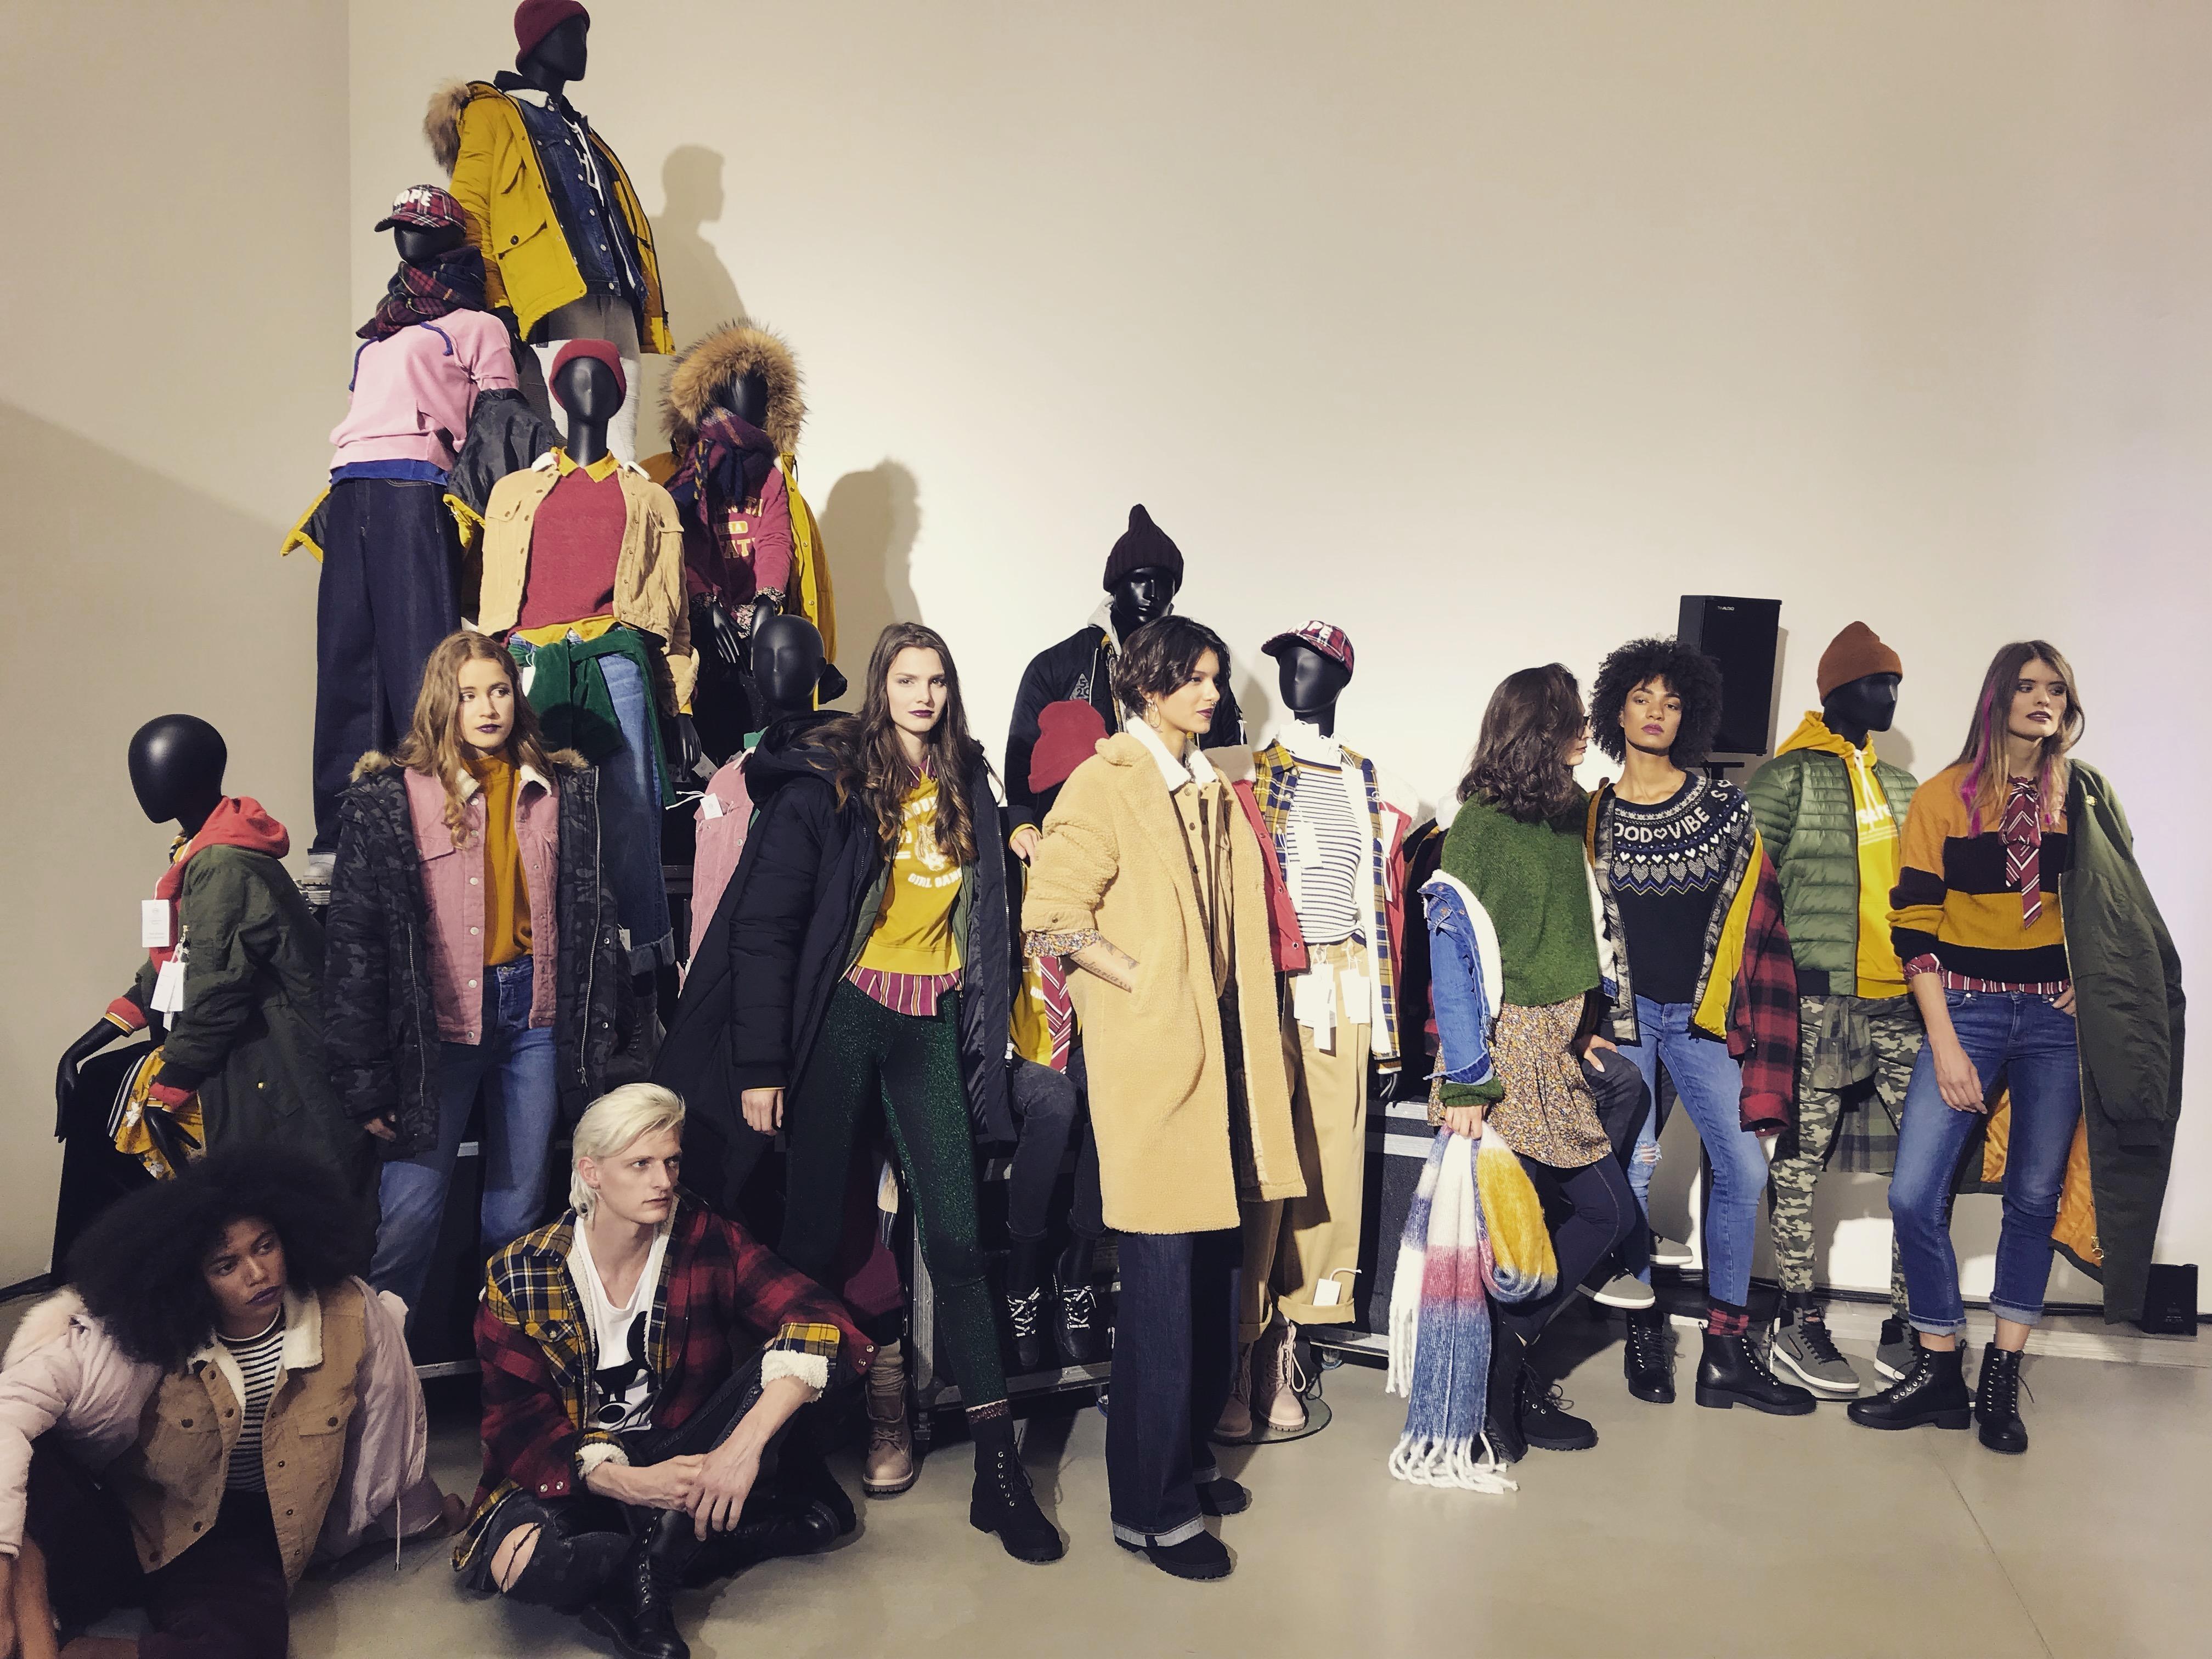 Die neue Herbst-/Winter-Kollektion von C&A: Check-Muster, Oversized-Strick und Teddy-Mäntel #couch_fashion #canda